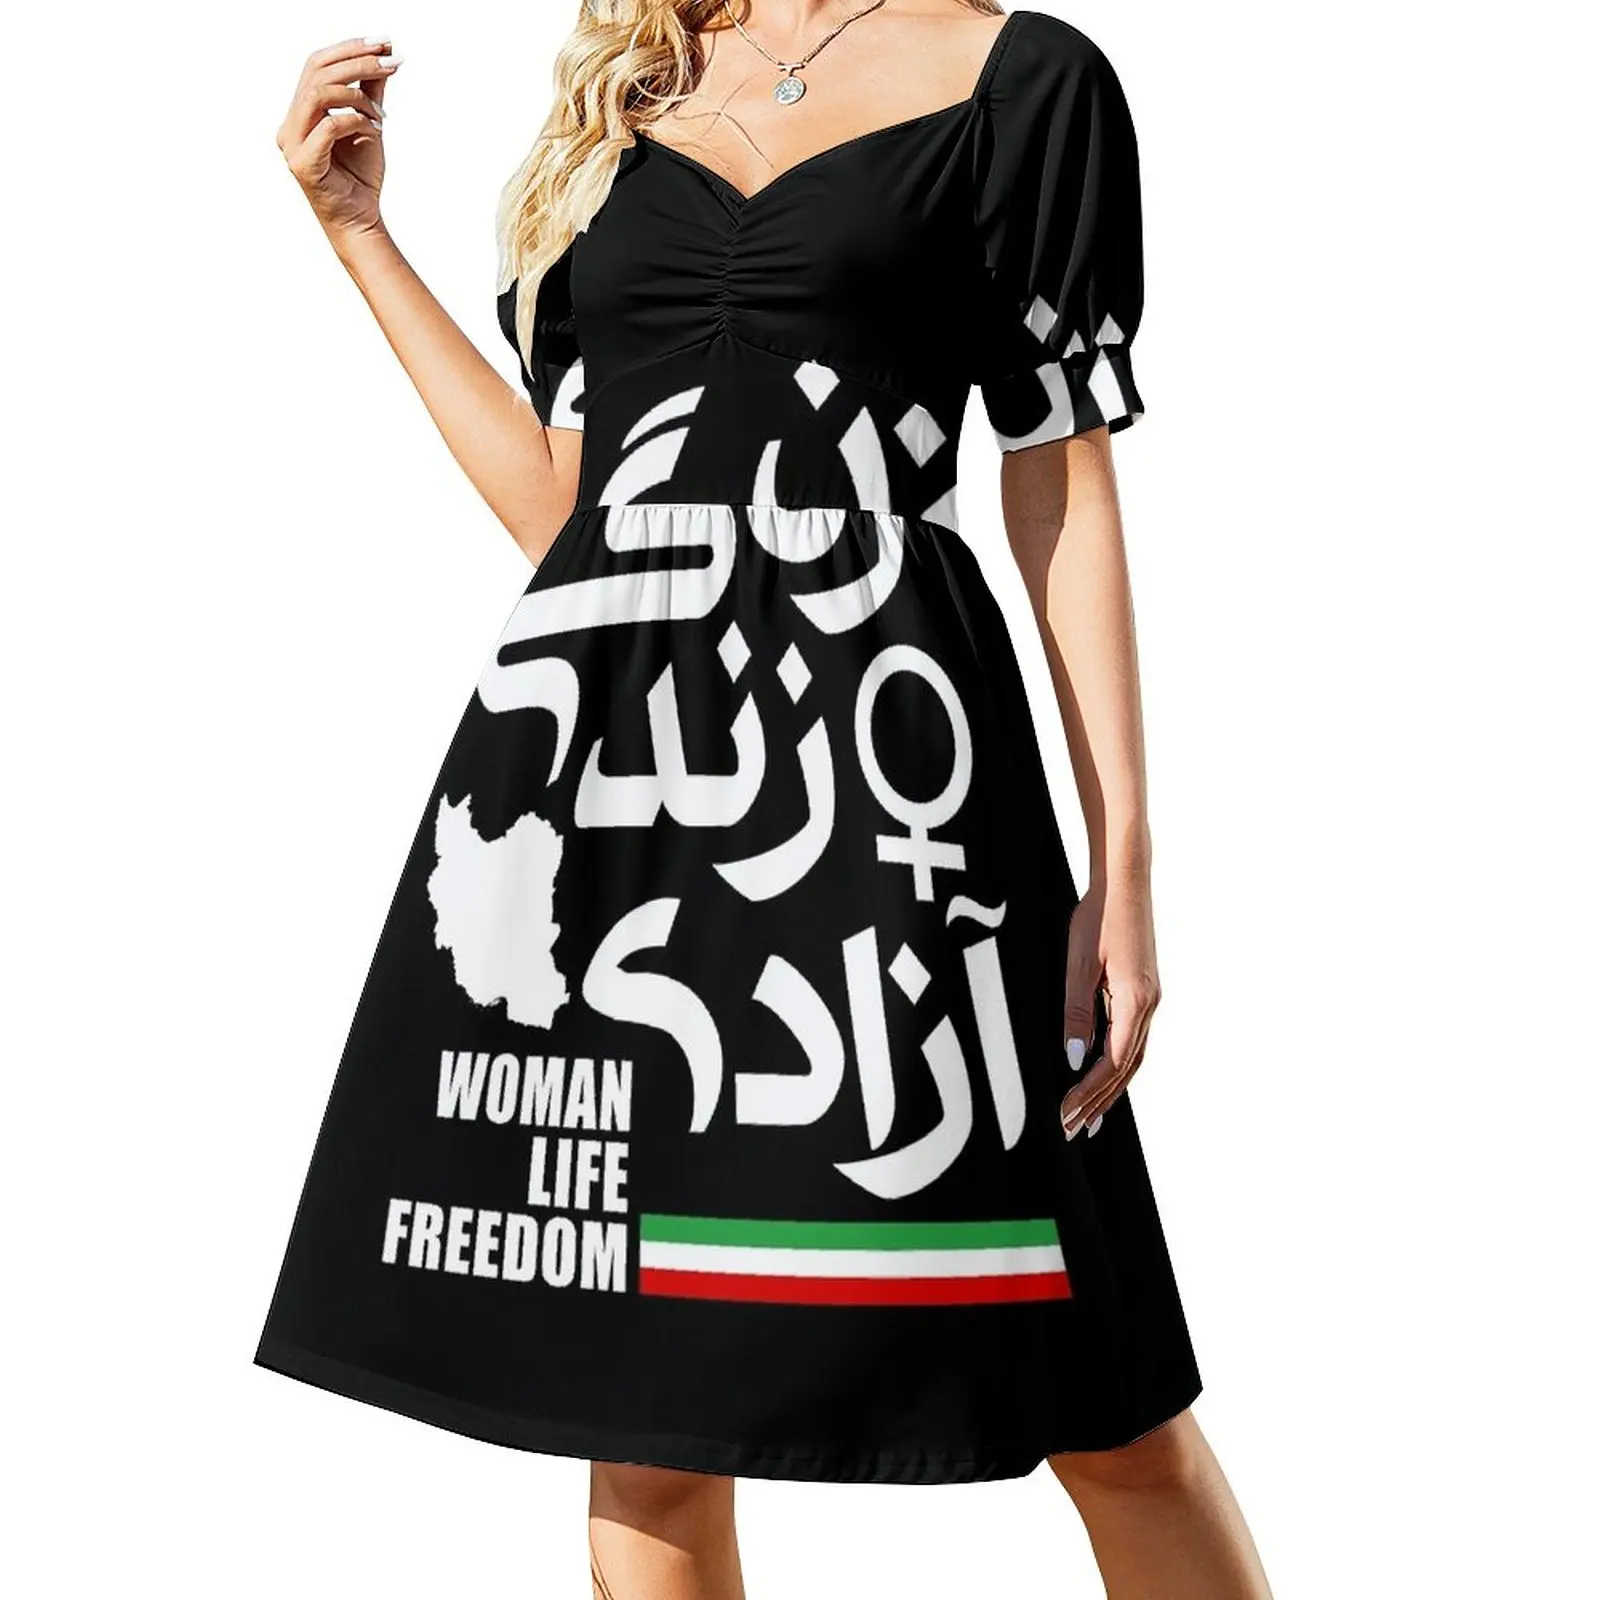 

Woman, Life, Freedom    Sleeveless Dress Women's evening dress Summer skirt